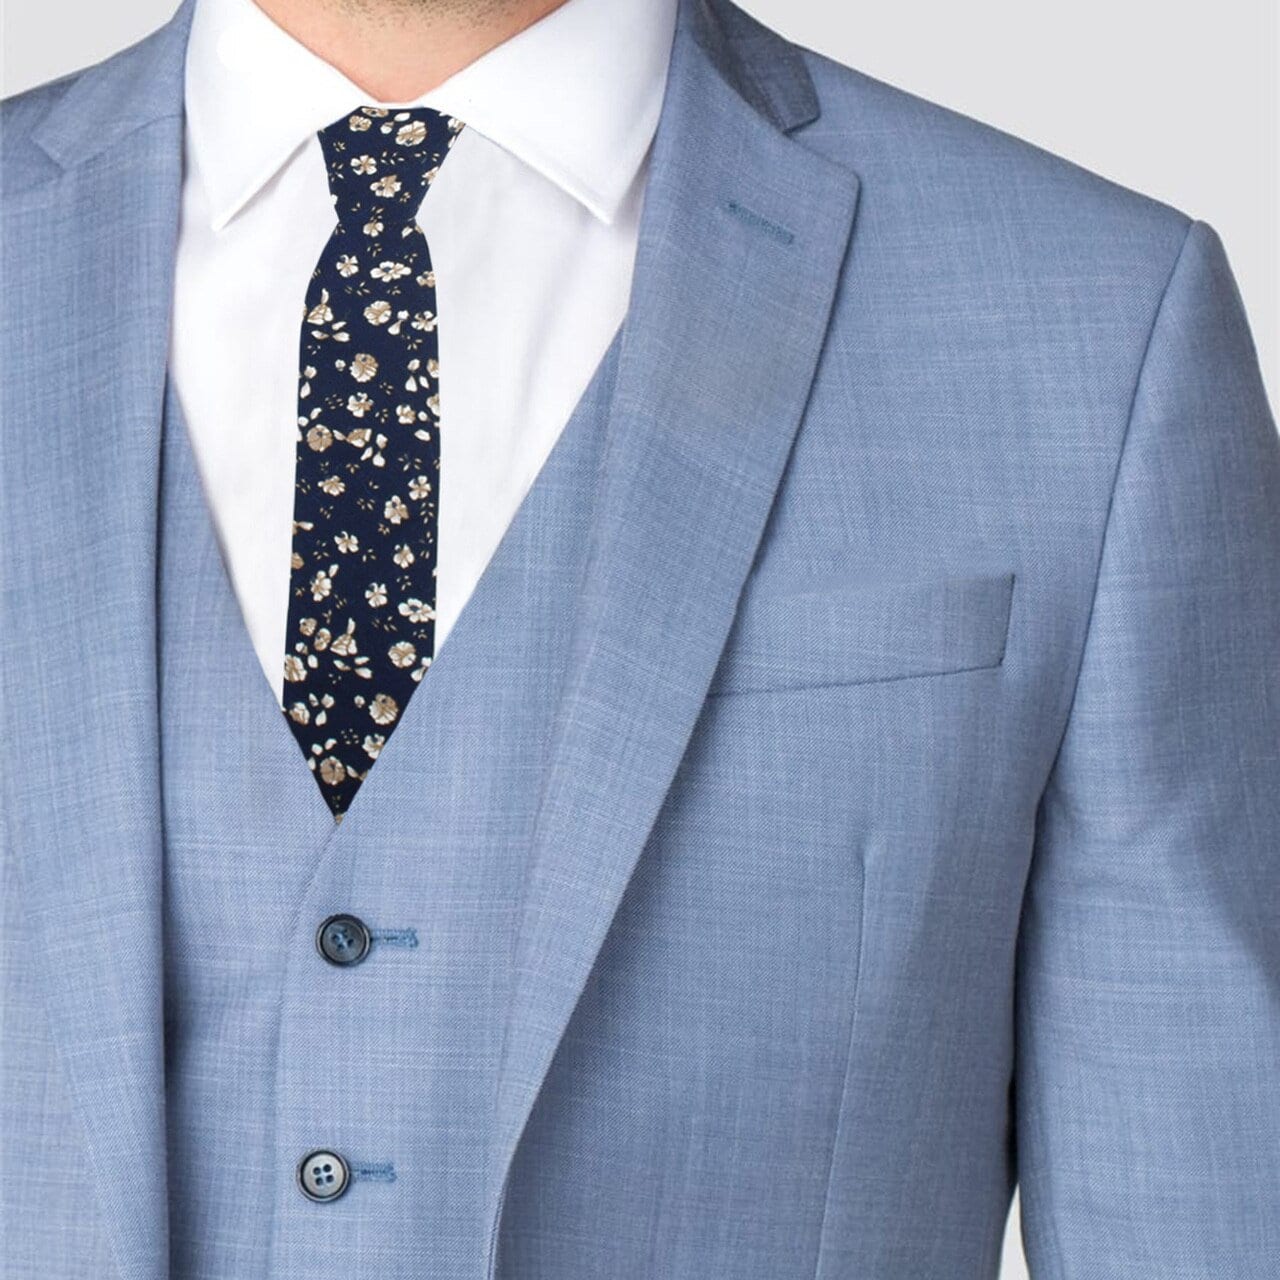 Men's Navy Blue Floral Wedding Slim Tie Great Ties for | Etsy